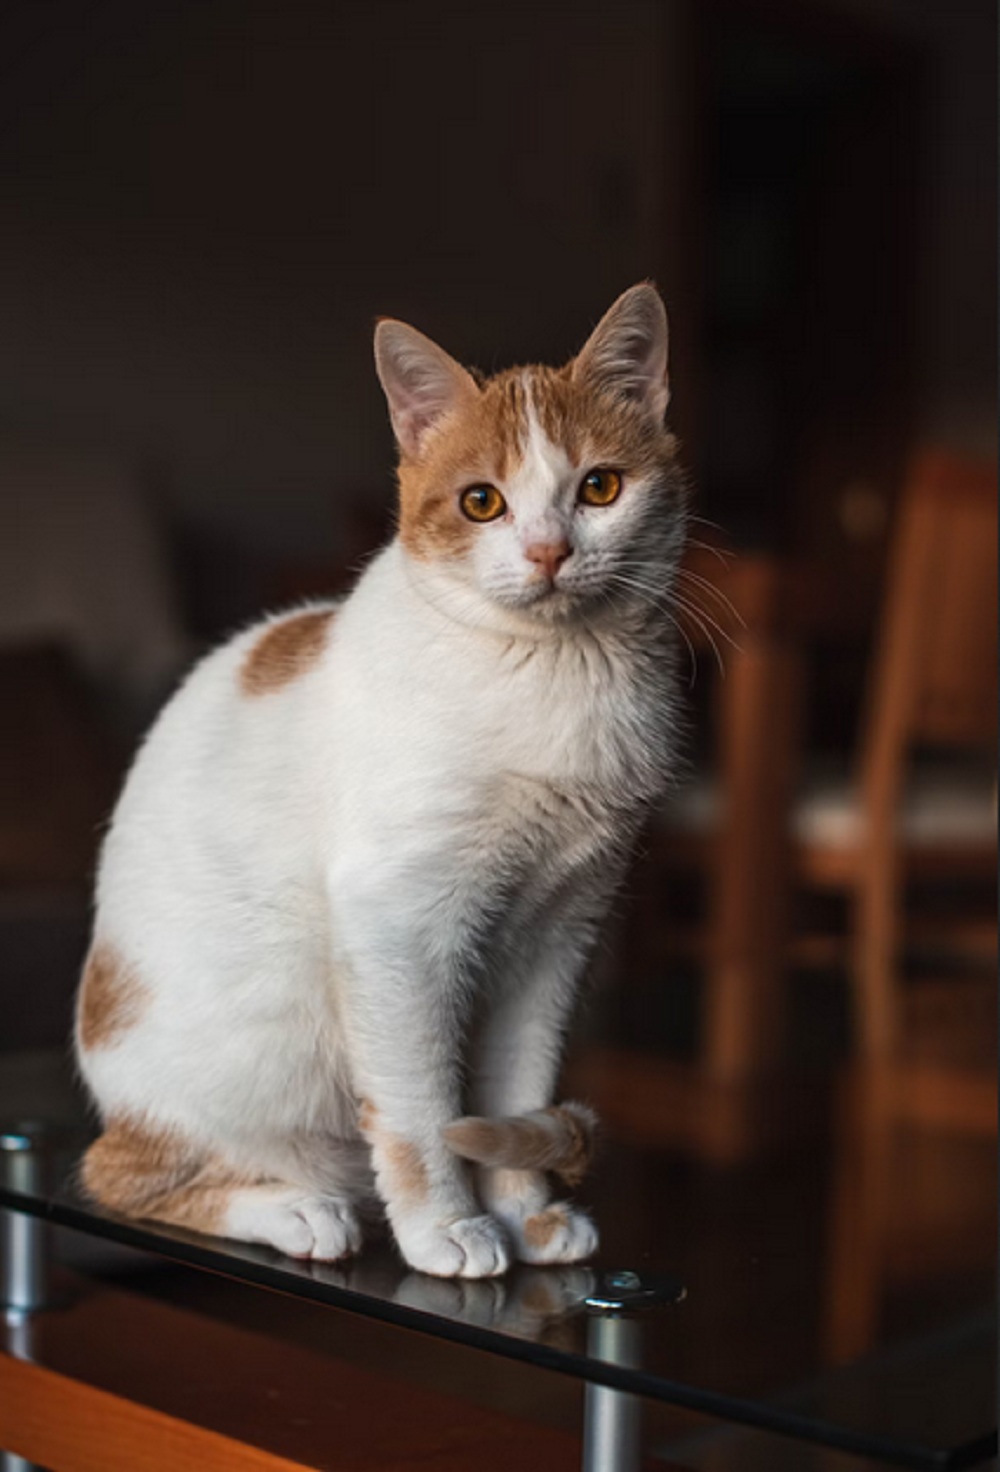 Cara Ampuh Mengusir Kucing Liar Agar Tidak Balik Lagi Ke Rumah,Yuk Simak Caranya